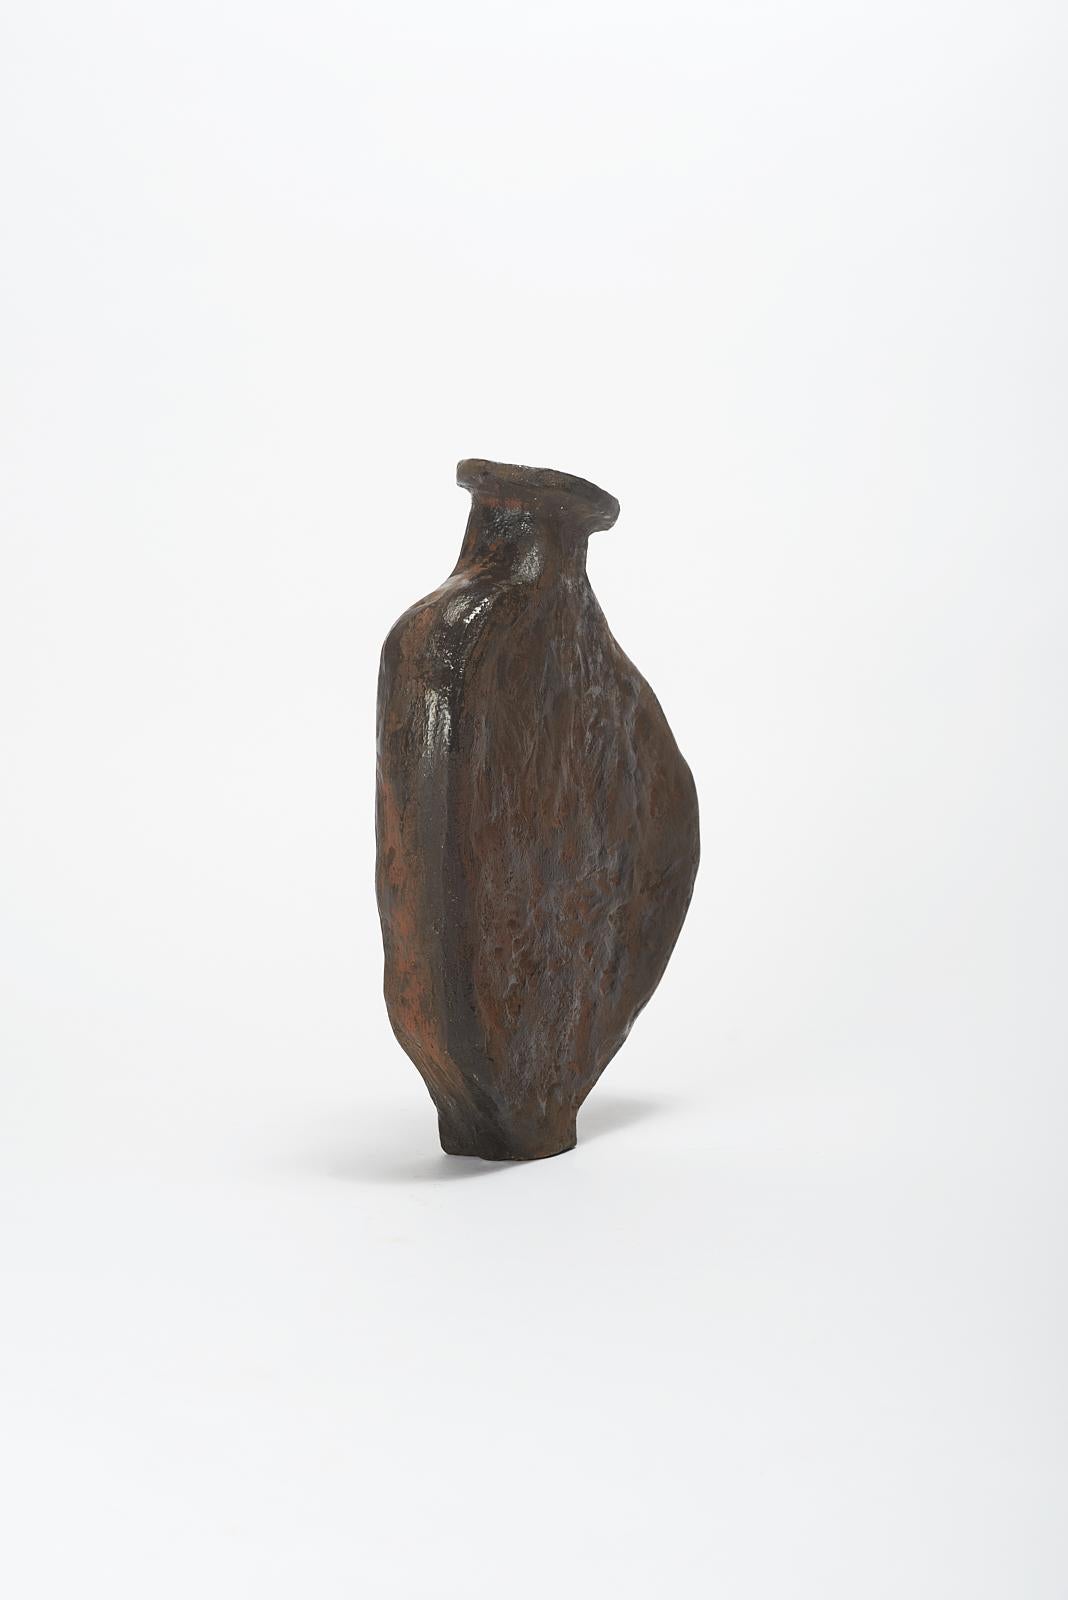 Dutch Tumbo Vase by Willem Van Hooff